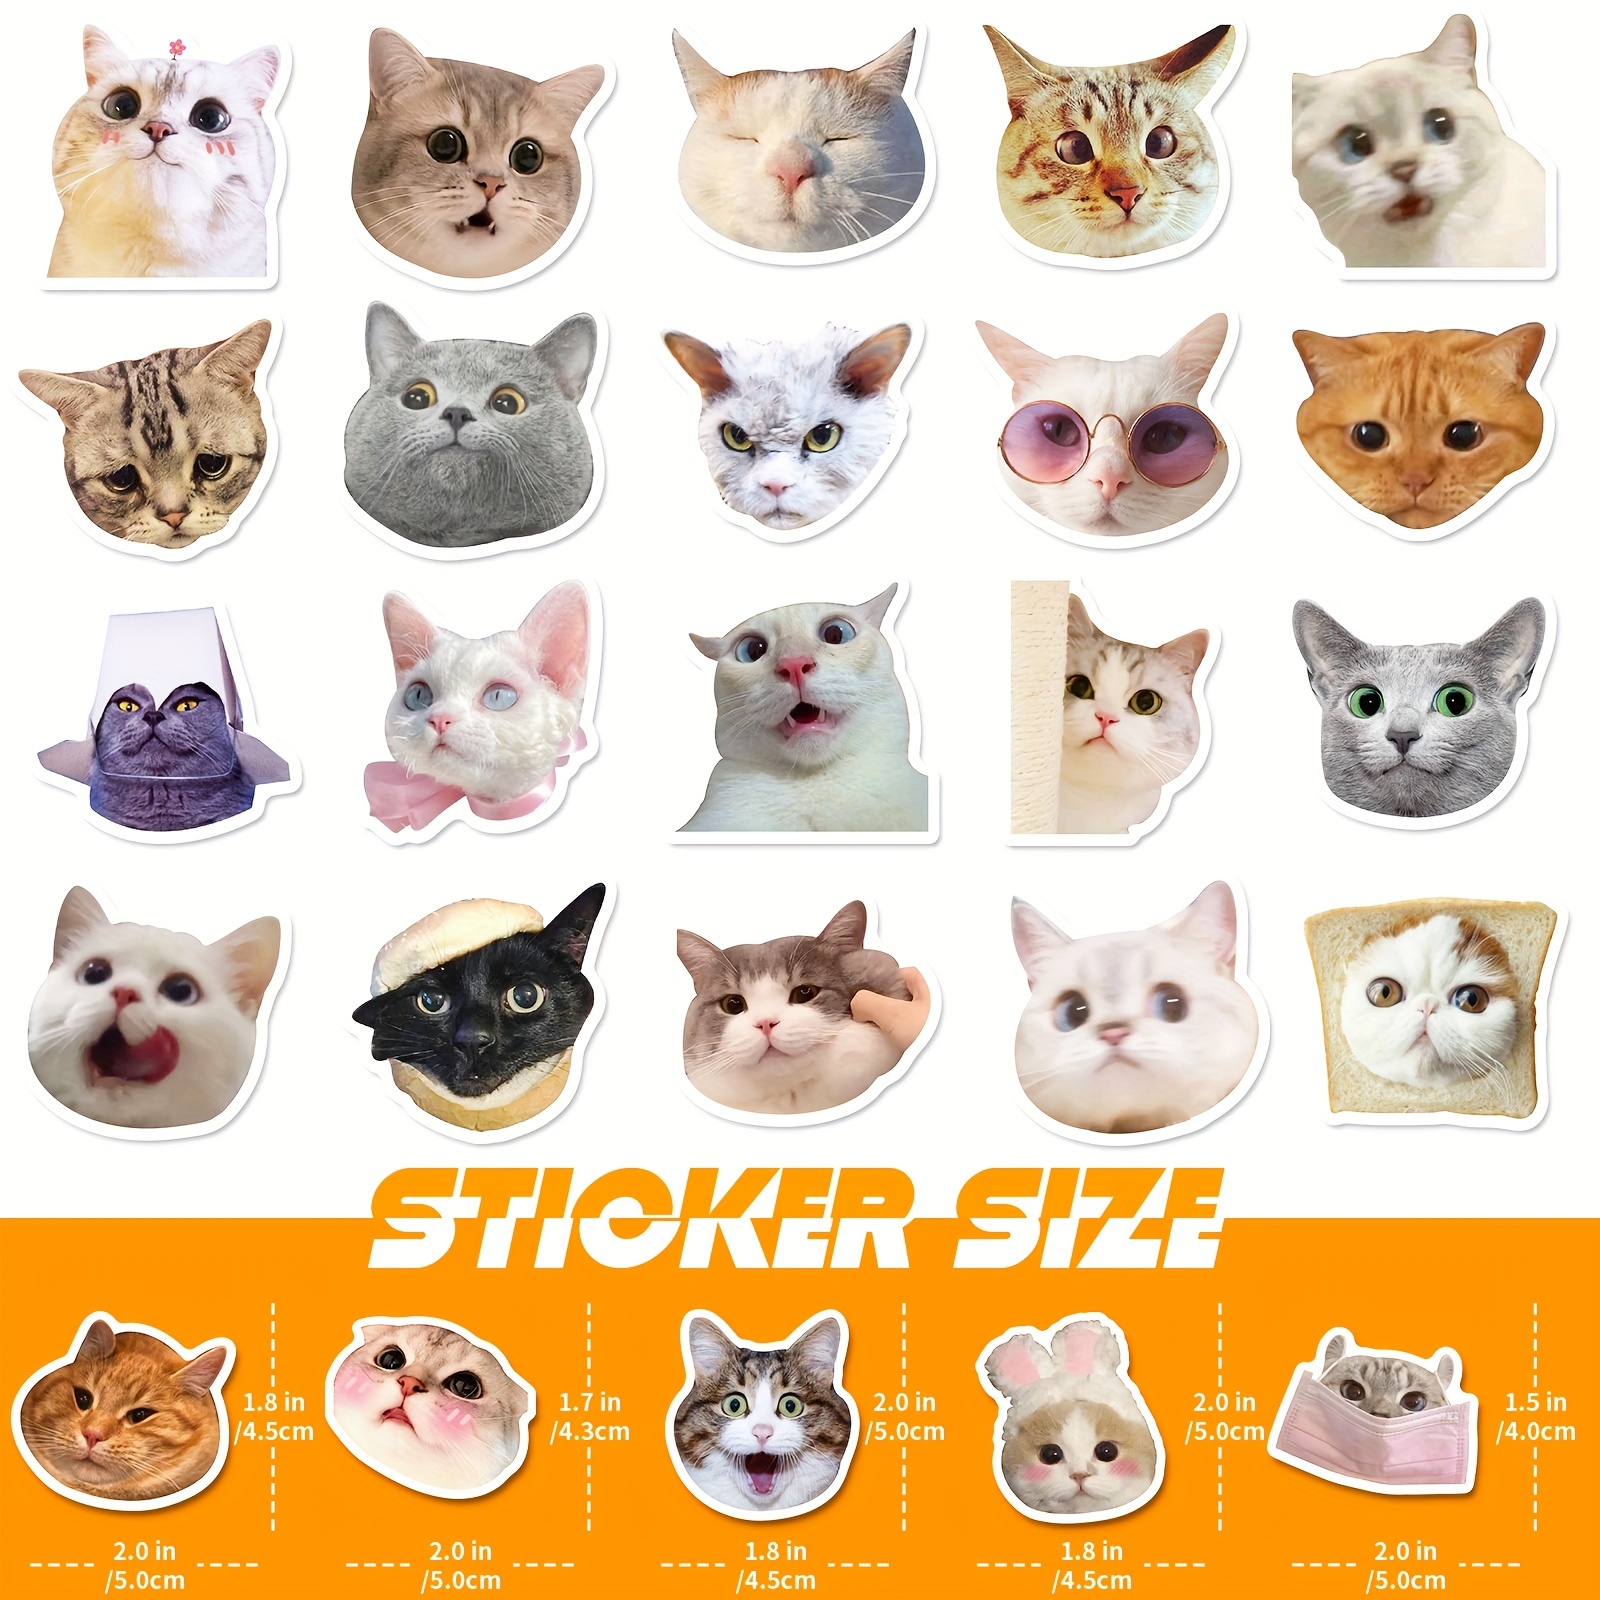 Kawaii Cat Stickers, 100 Pcs Cute Cat Laptop Stickers, Waterproof Vinyl Cat Sticker Decals, Cartoon Cat Sticker Pack for Water Bottles, Laptops